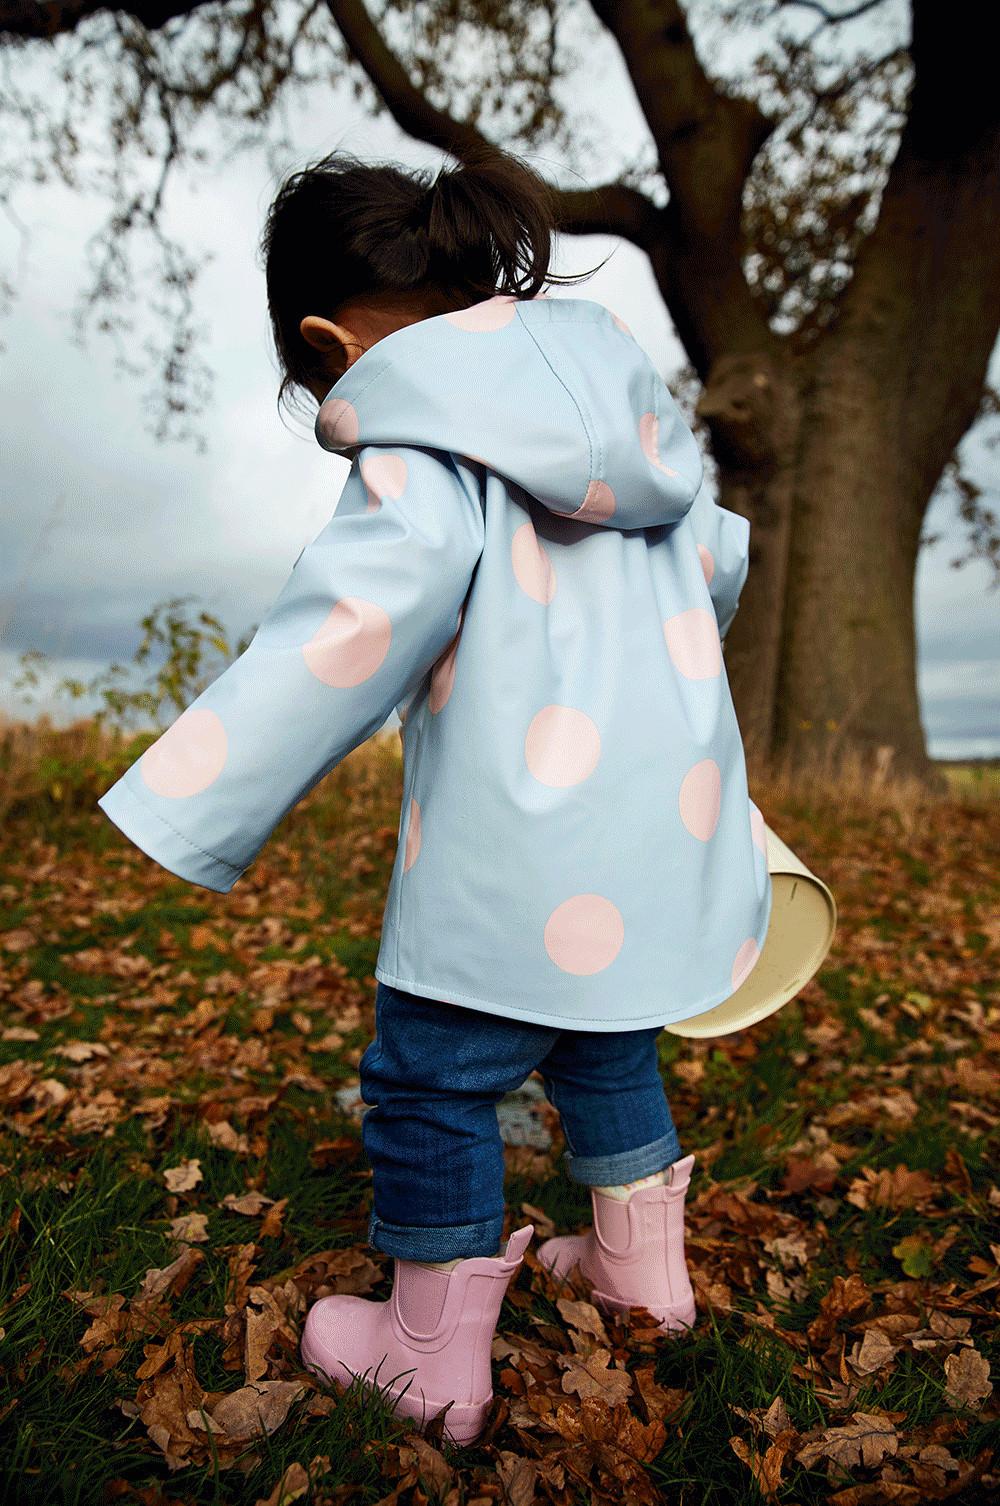 Memoryee Kids Puddle Rainsuit Tuta Impermeabile Leggero Bambino Tutto in Uno Impermeabile Allaperto Abbigliamento da Pioggia 1-7 Anni 